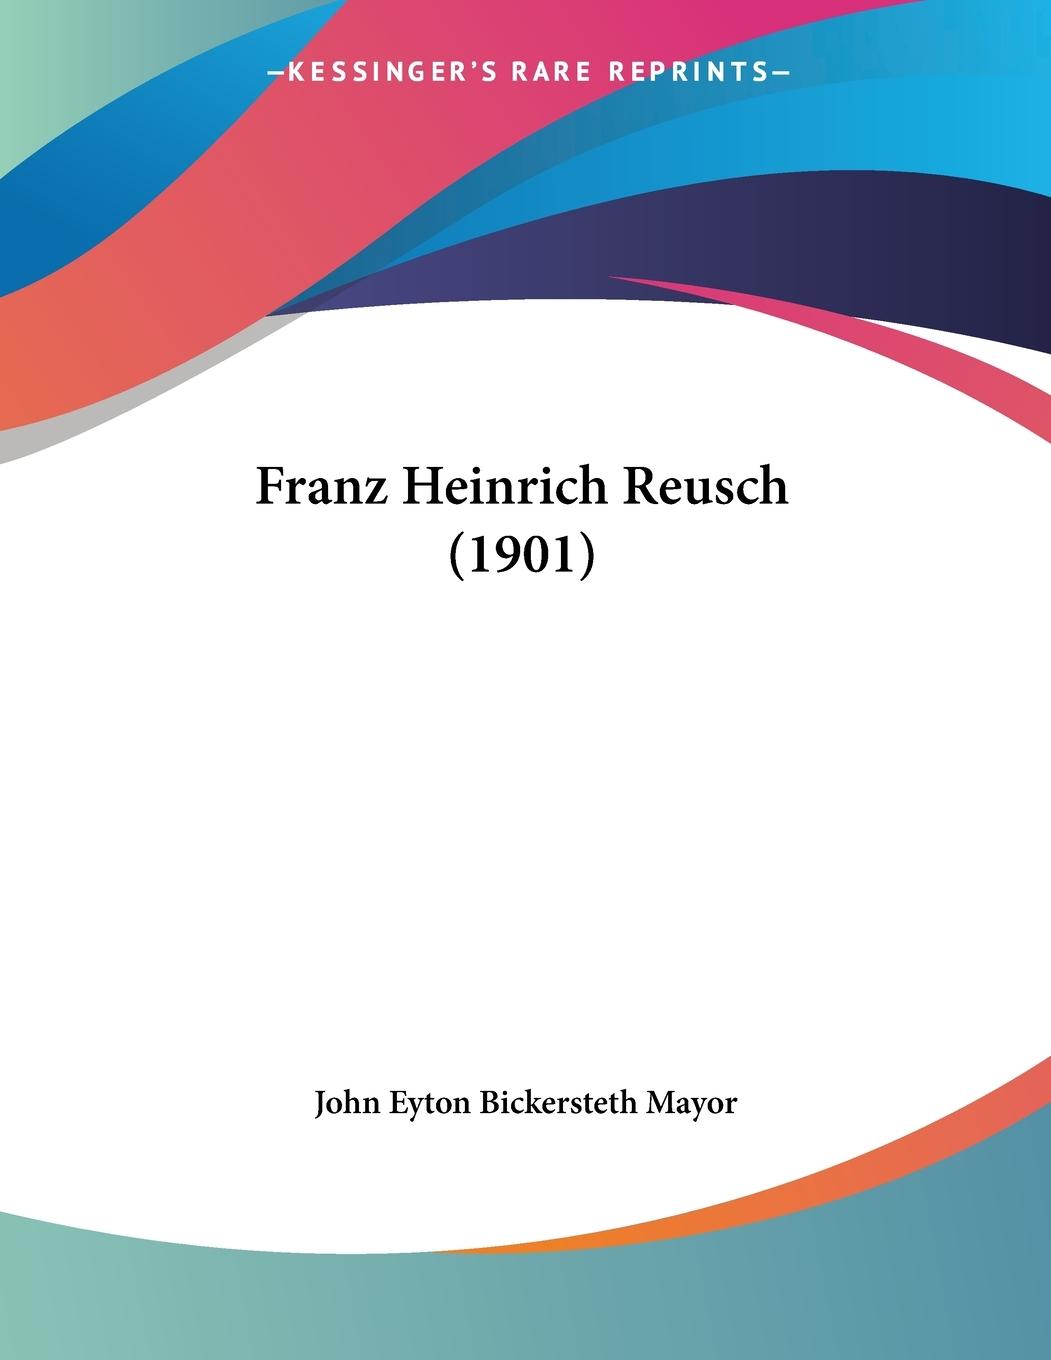 Franz Heinrich Reusch (1901) - Mayor, John Eyton Bickersteth